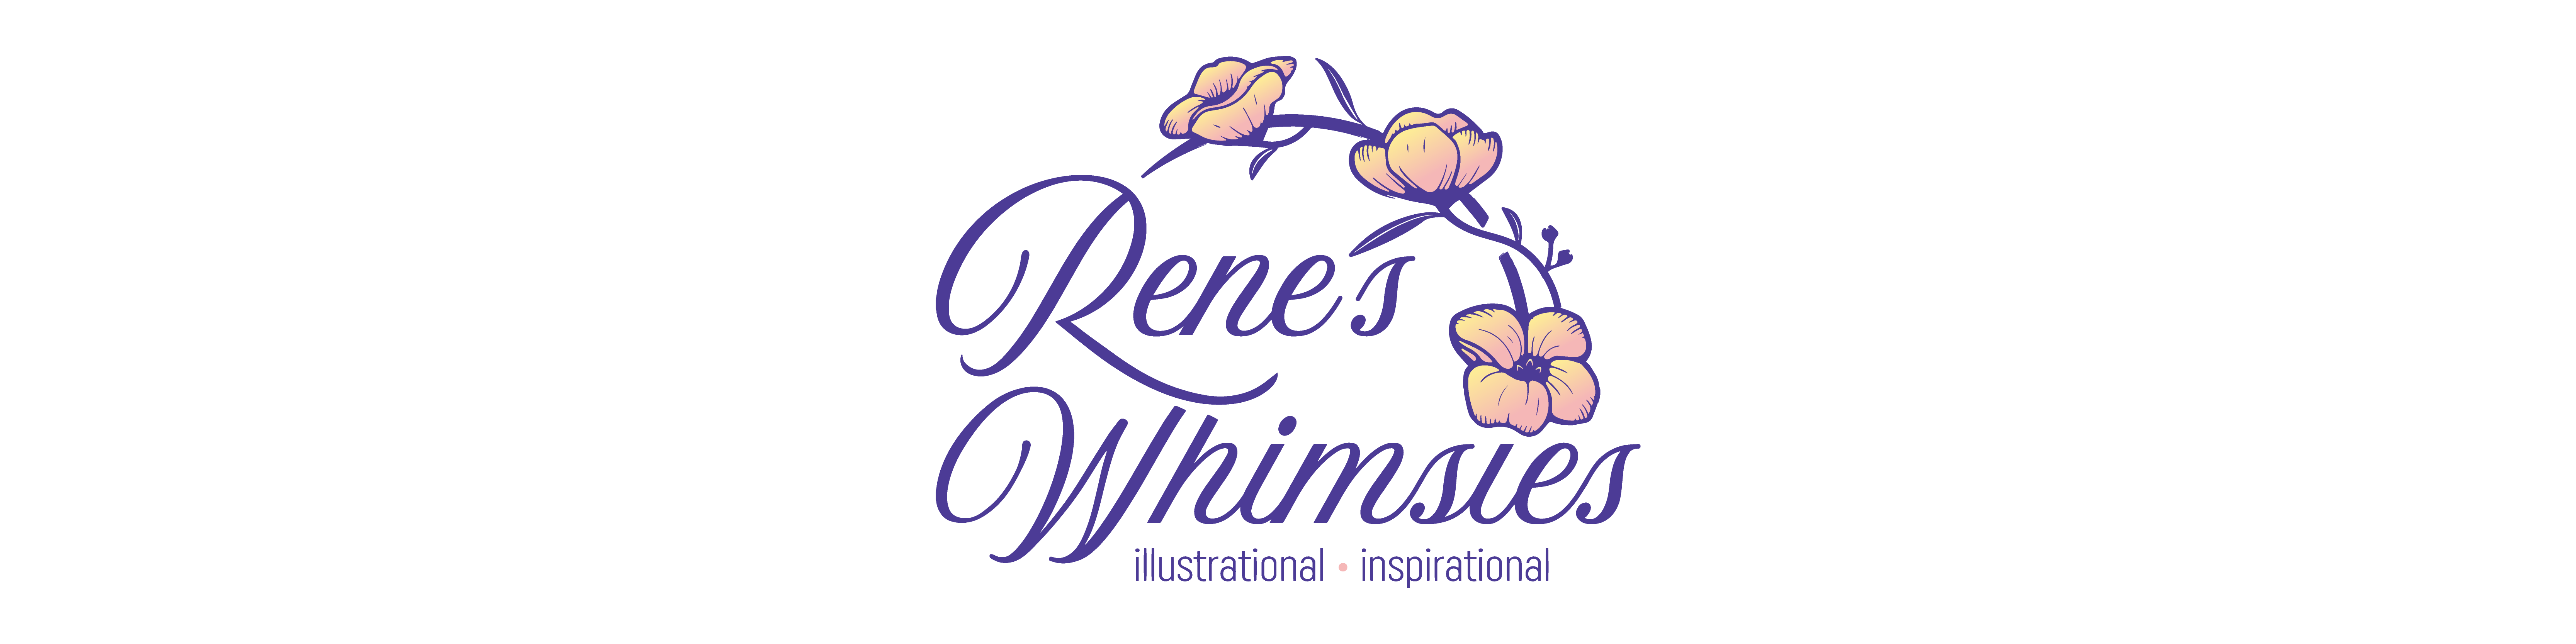 Rene's Whimsies Logo Header